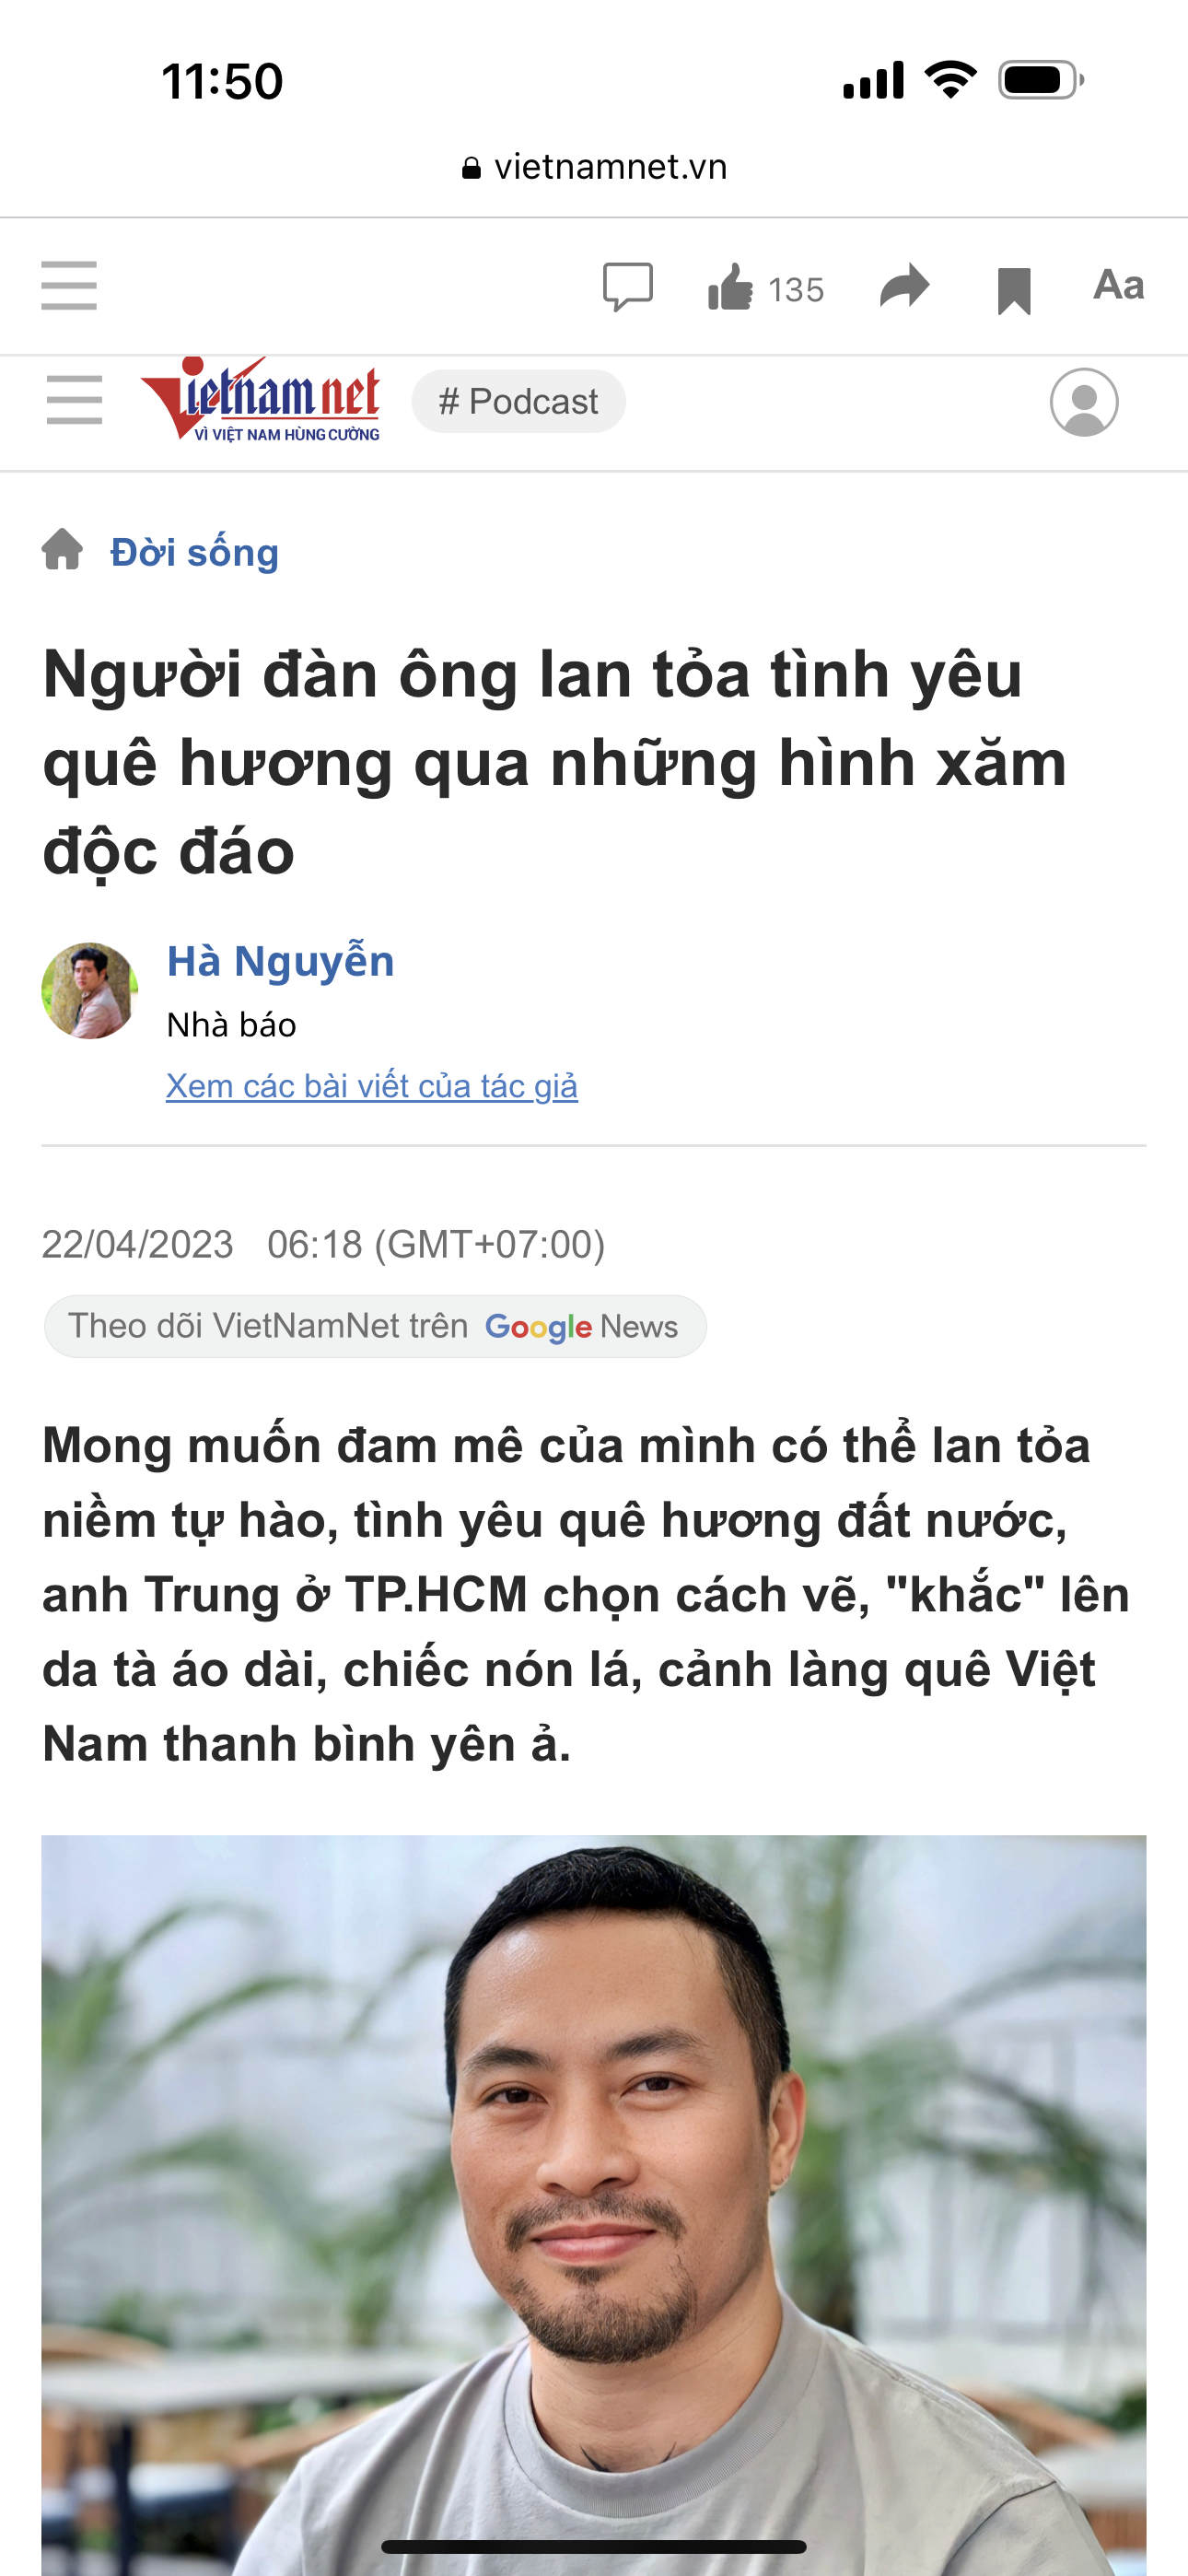 Vietnamnet online newspaper